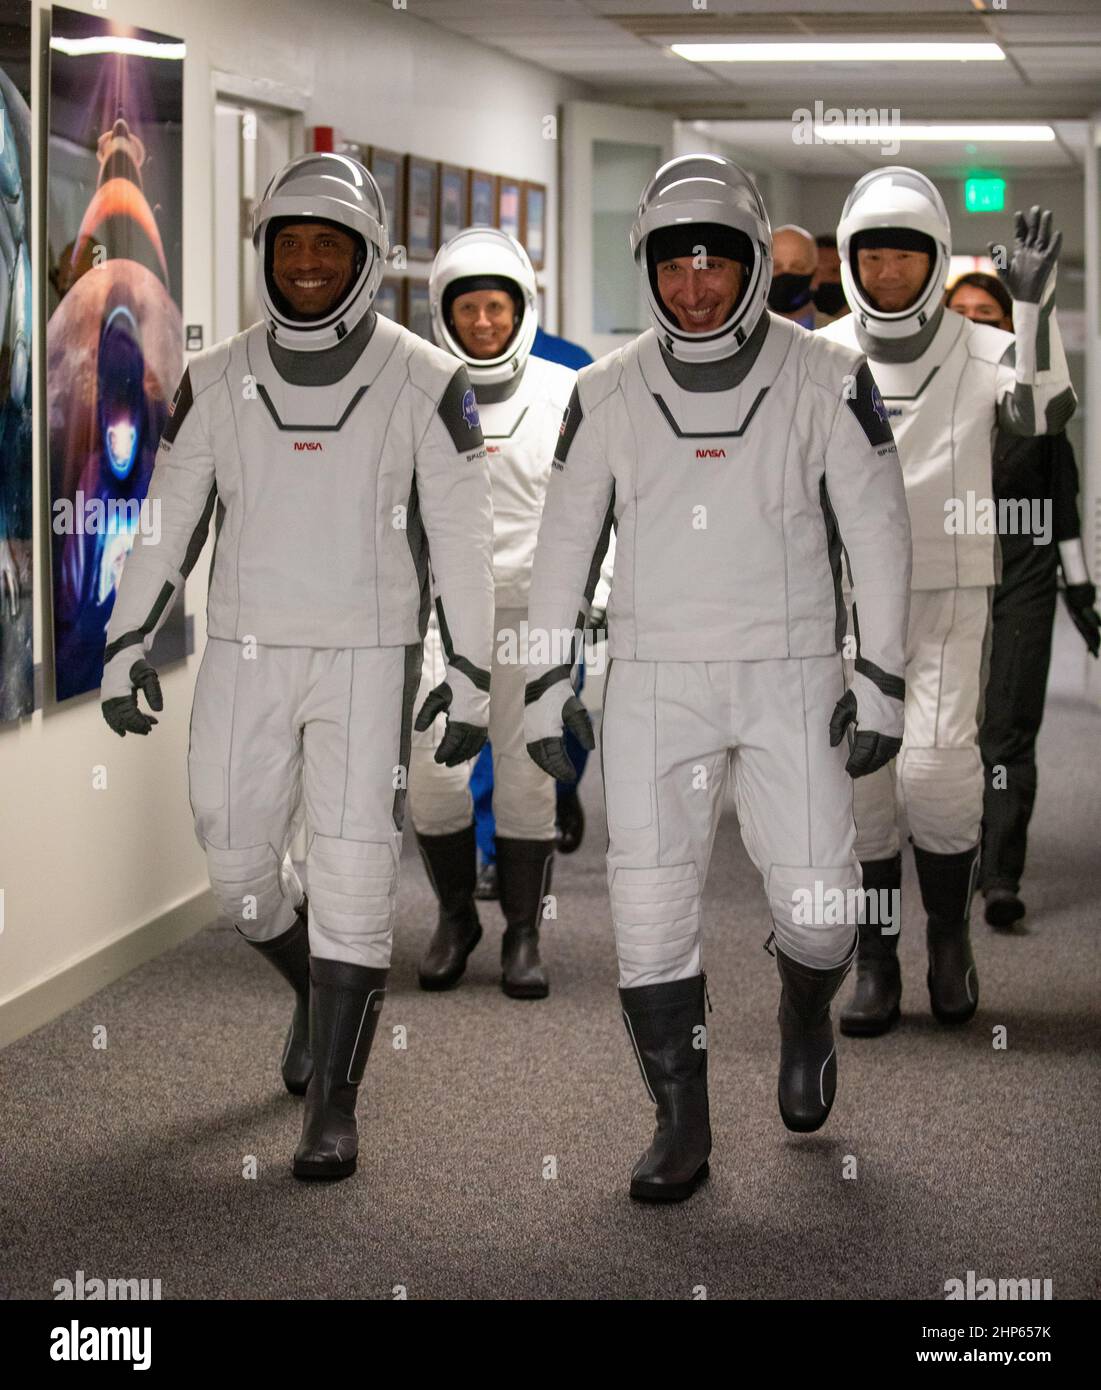 Le 15 novembre 2020, les astronautes de l’équipage SpaceX de la NASA, 1, sortent du bâtiment Neil Armstrong Operations and Checkout du Kennedy Space Center de la NASA en Floride. Devant, de gauche à droite se trouvent l'astronaute de la NASA Victor Glover, pilote, et l'astronaute de la NASA Michael Hopkins, commandant de l'engin spatial. Derrière eux, de gauche à droite se trouvent l'astronaute de la NASA Shannon Walker, spécialiste de la mission, et l'astronaute JAXA Soichi Noguchi, spécialiste de la mission. Ils embarqueront à bord de deux véhicules Tesla pour le voyage de lancement du complexe 39A. Banque D'Images